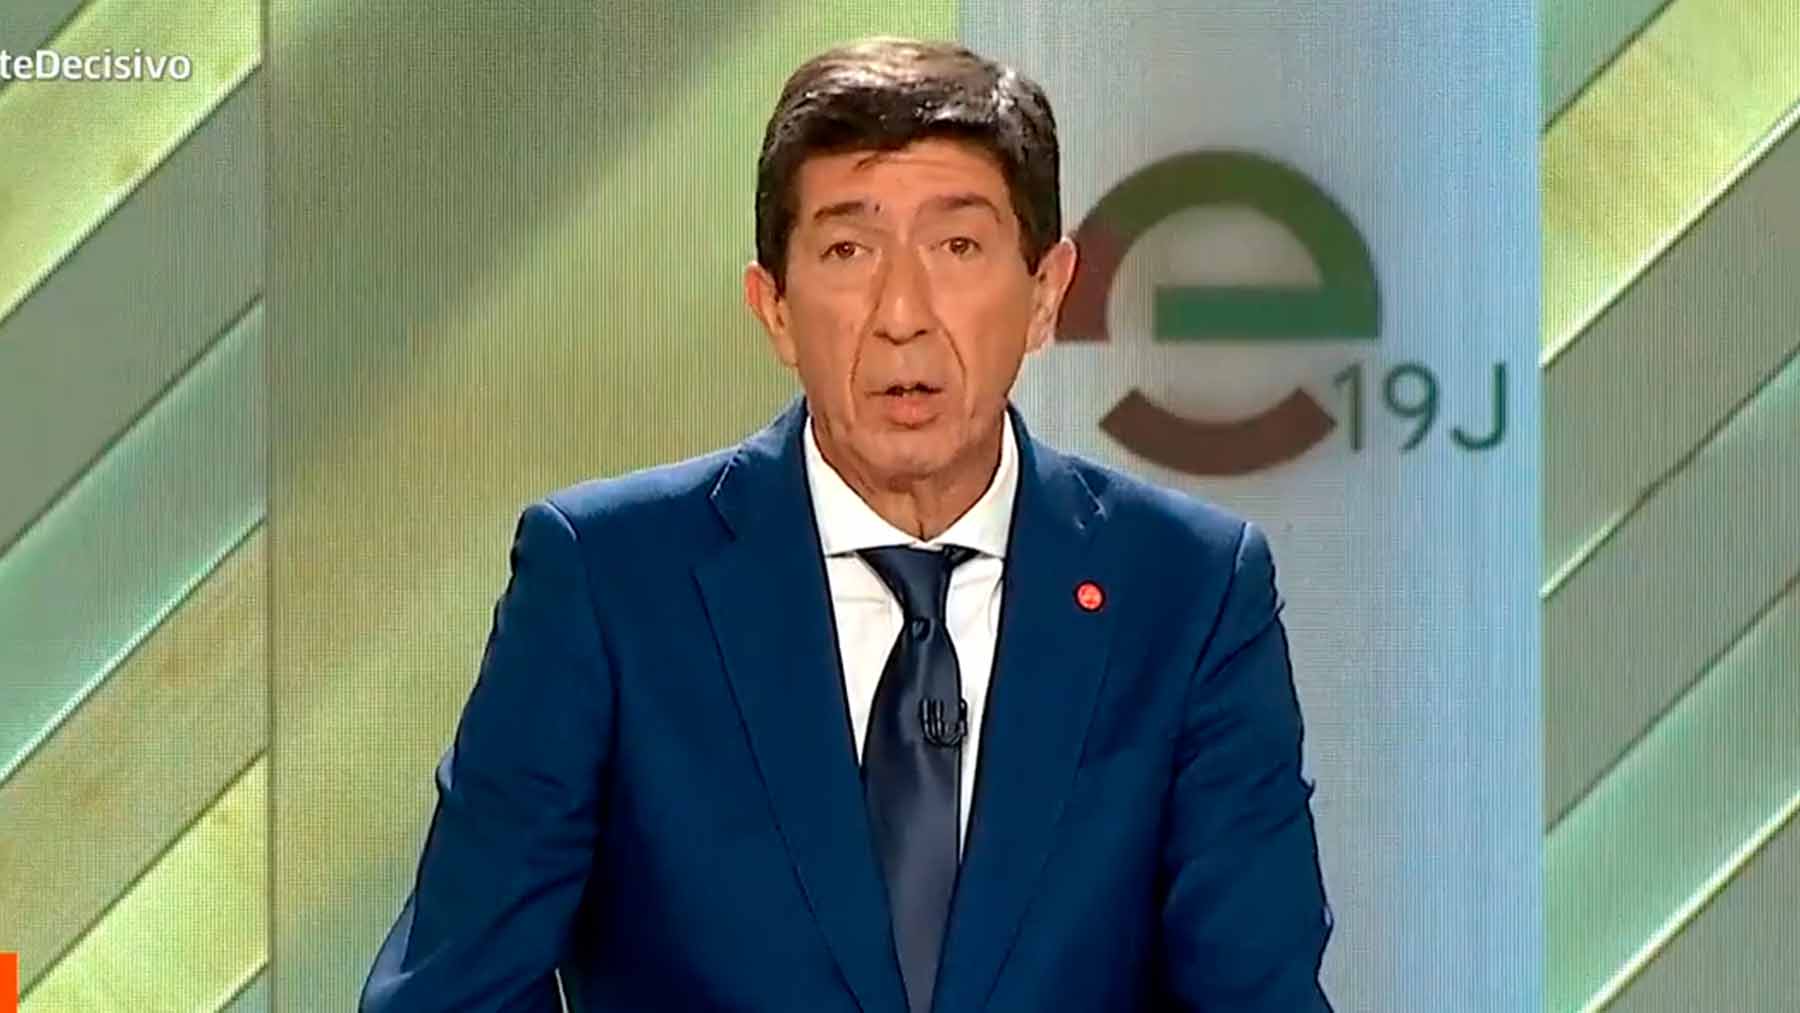 Juan Marín, candidato de Cs en Andalucía.